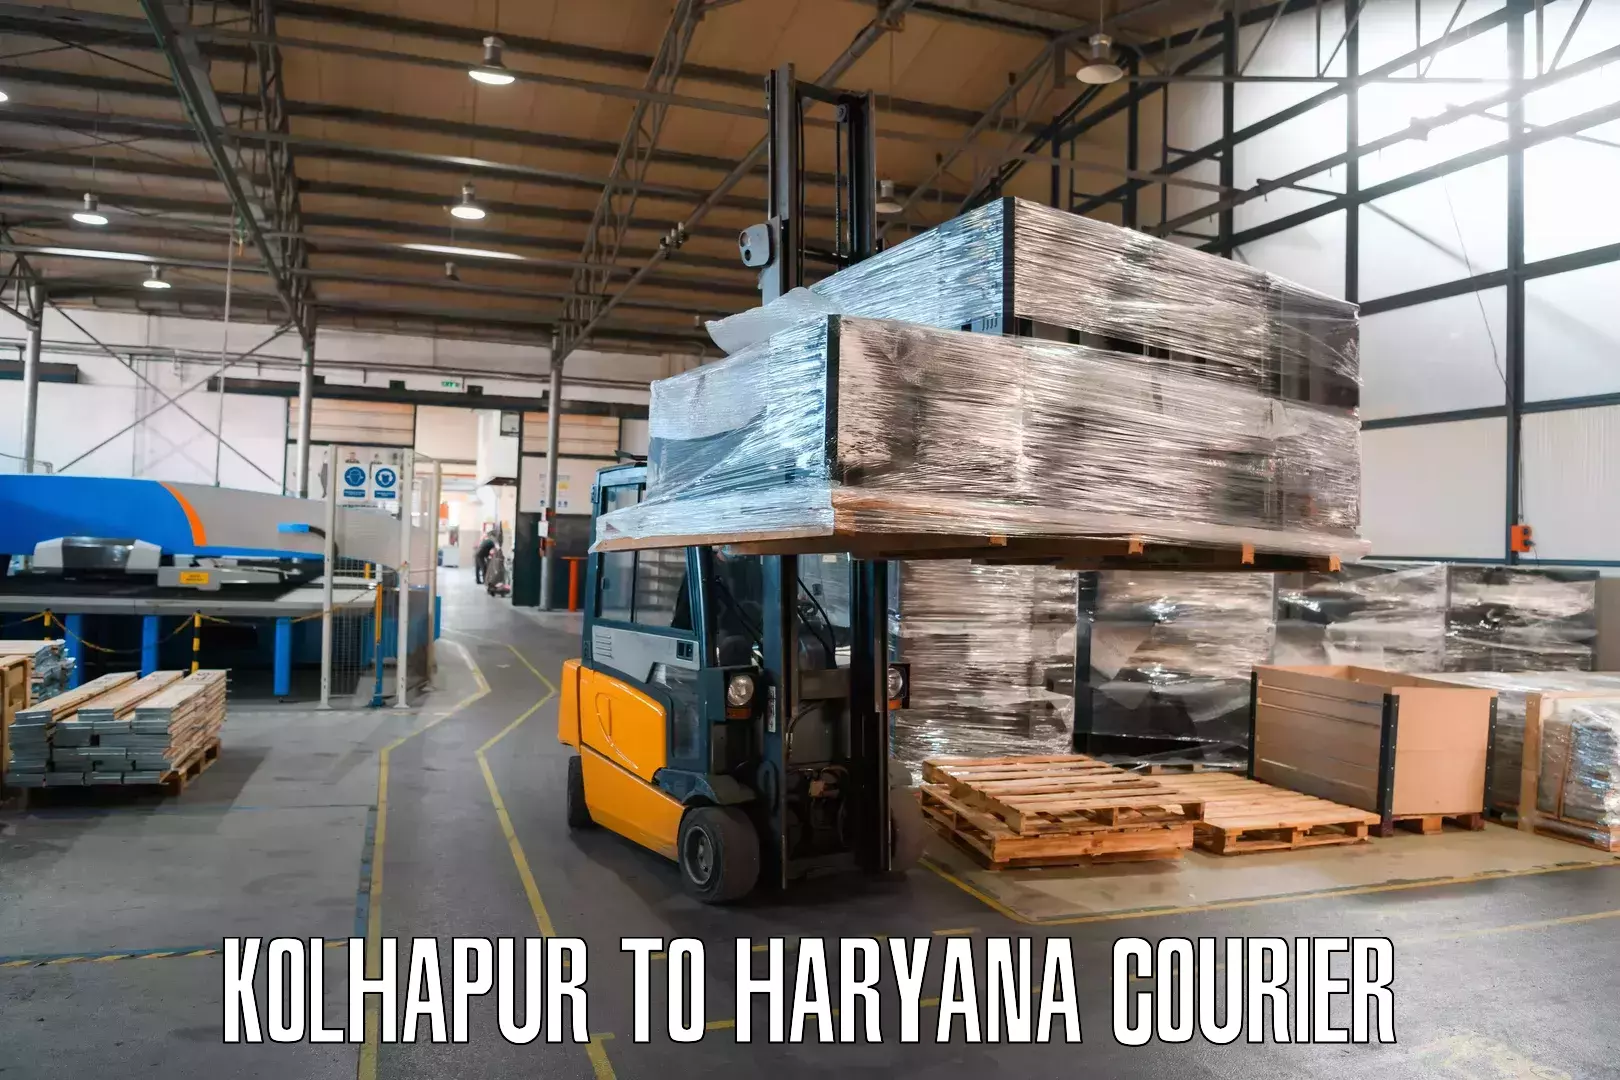 International parcel service Kolhapur to Panchkula